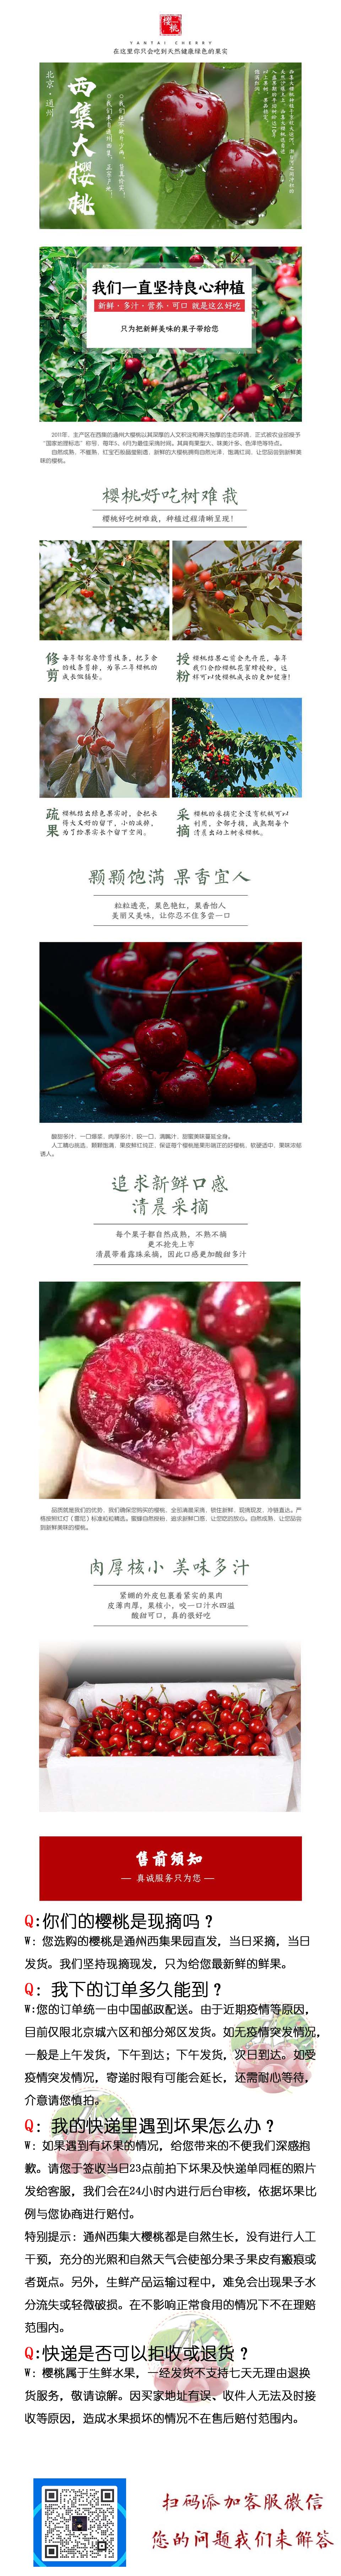 【北京馆】【京郊农品】北京通州西集大樱桃3斤装